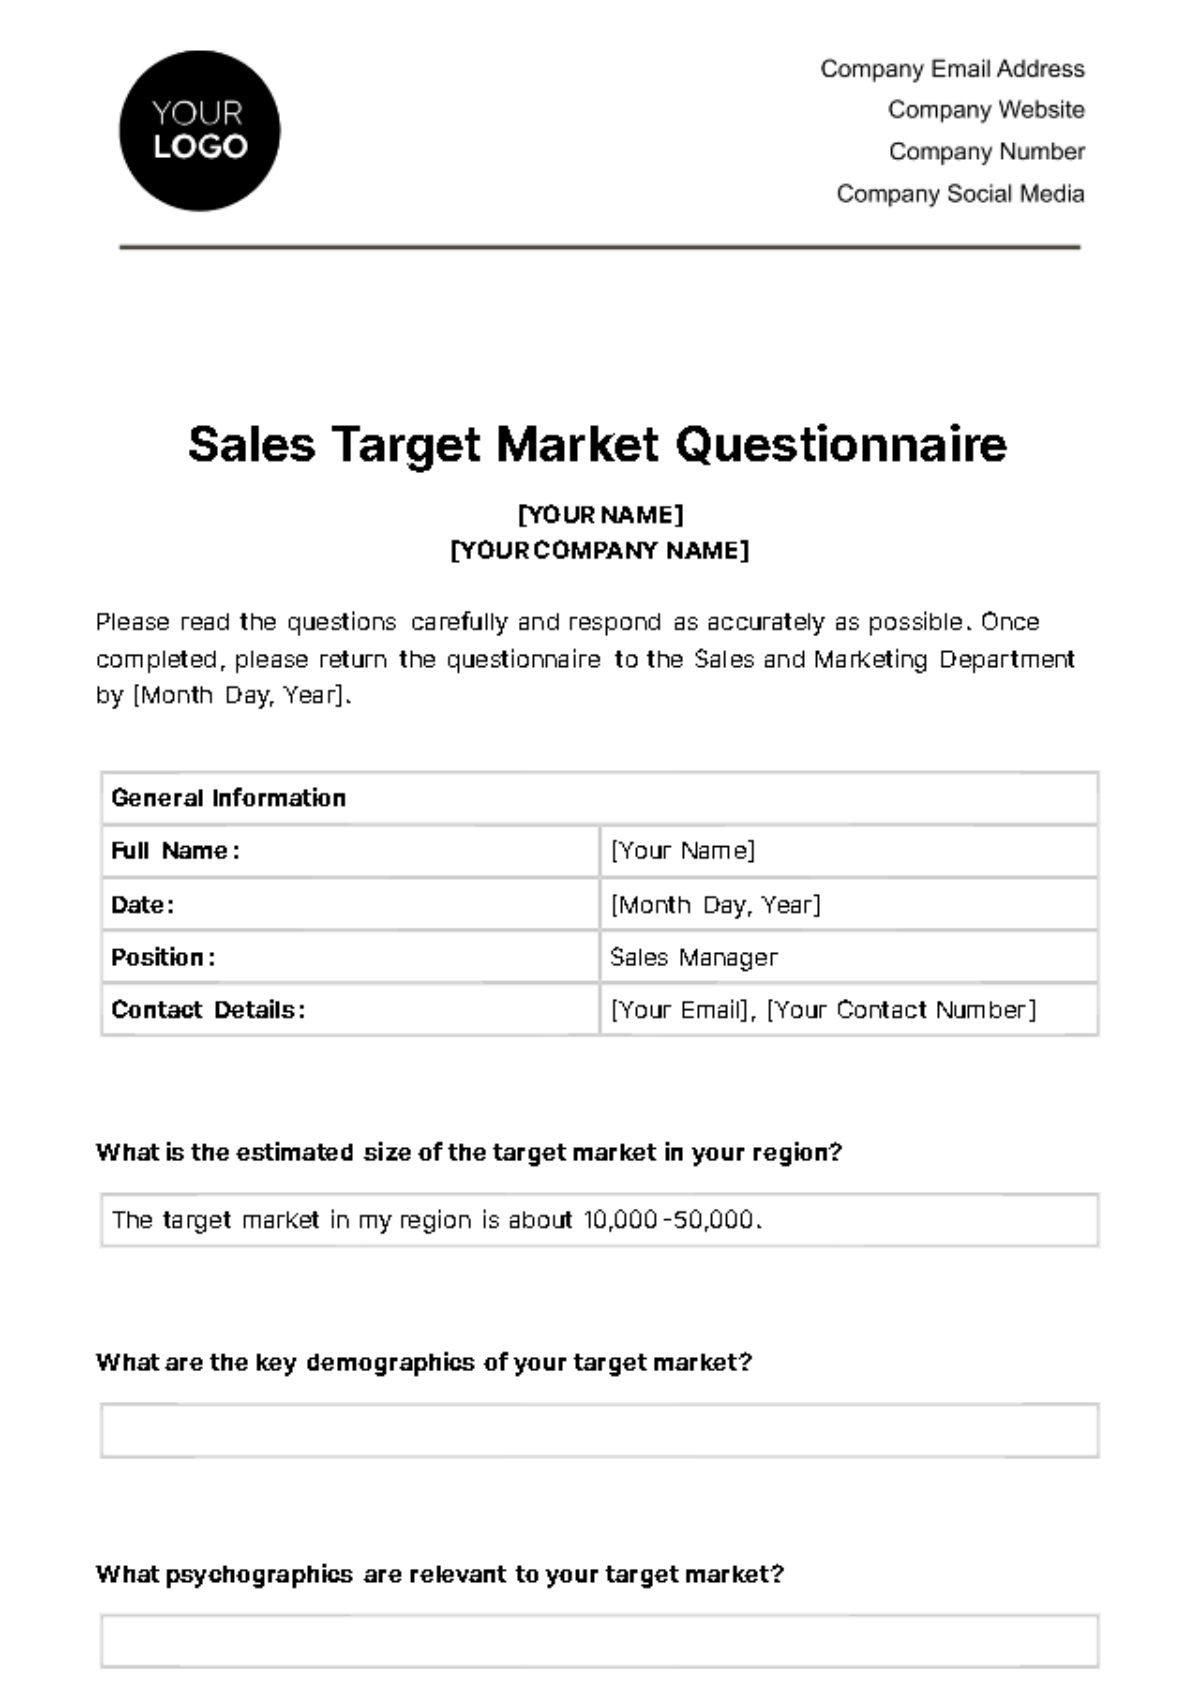 Sales Target Market Questionnaire Template